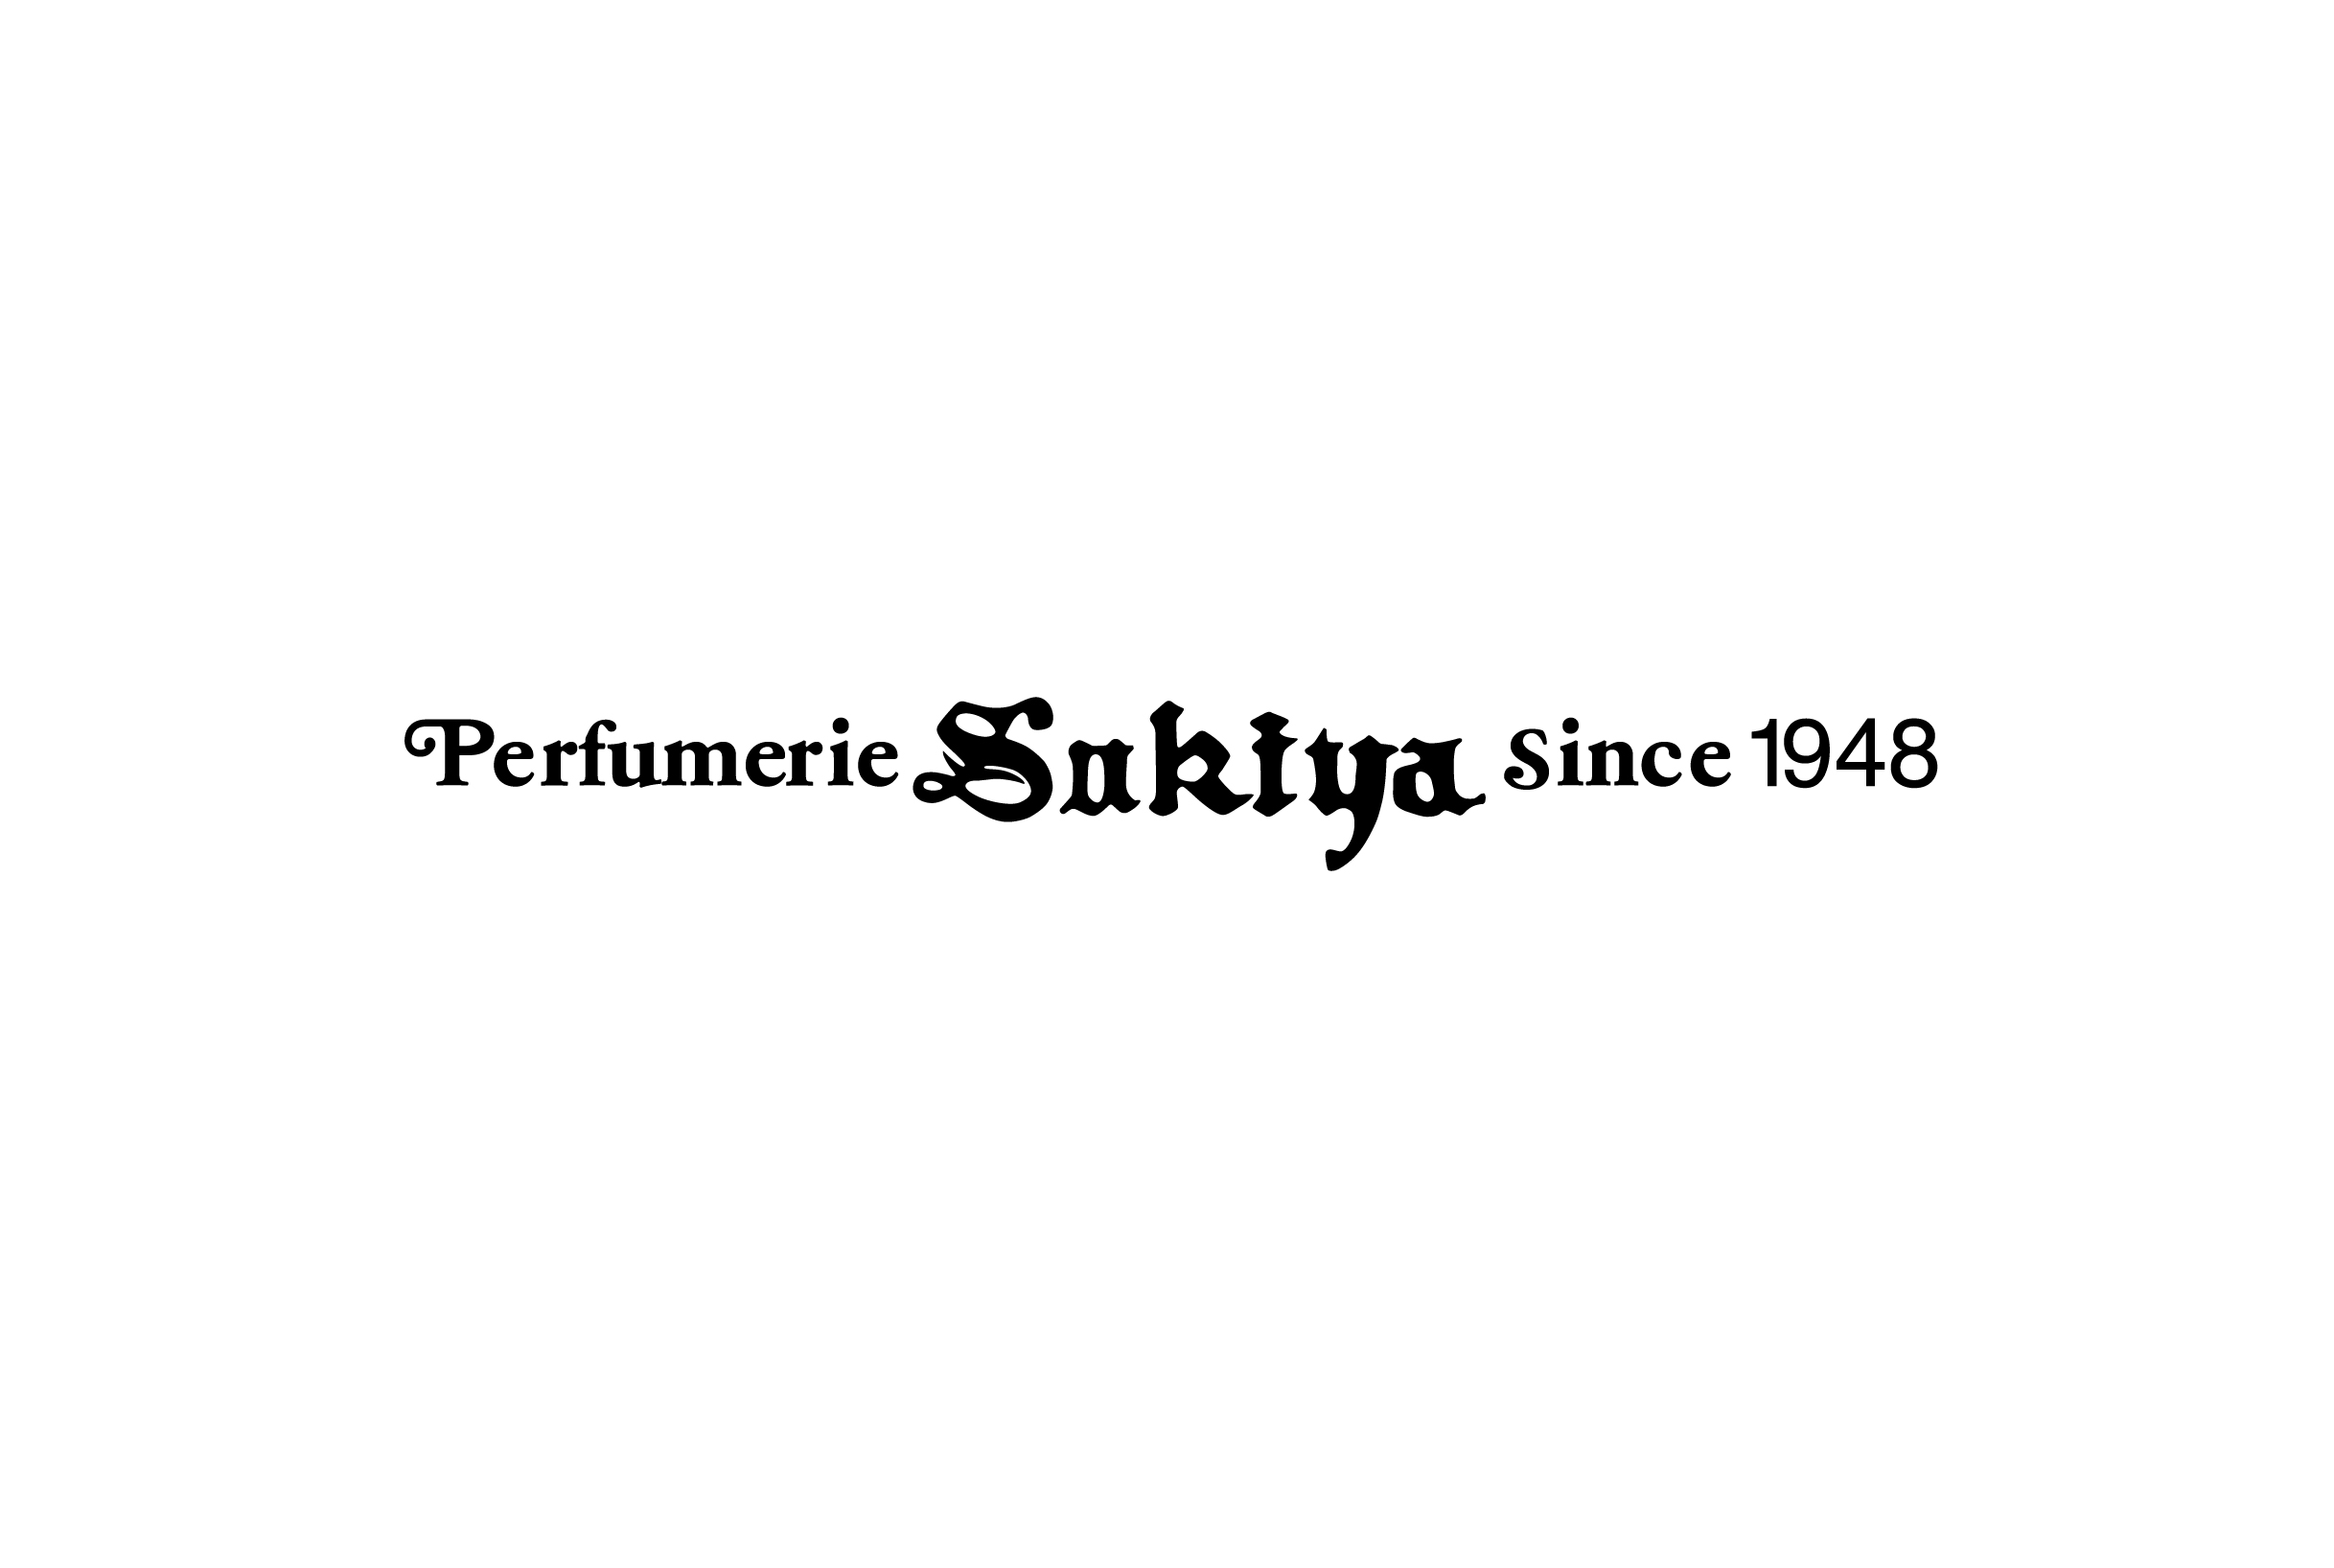 sukiya